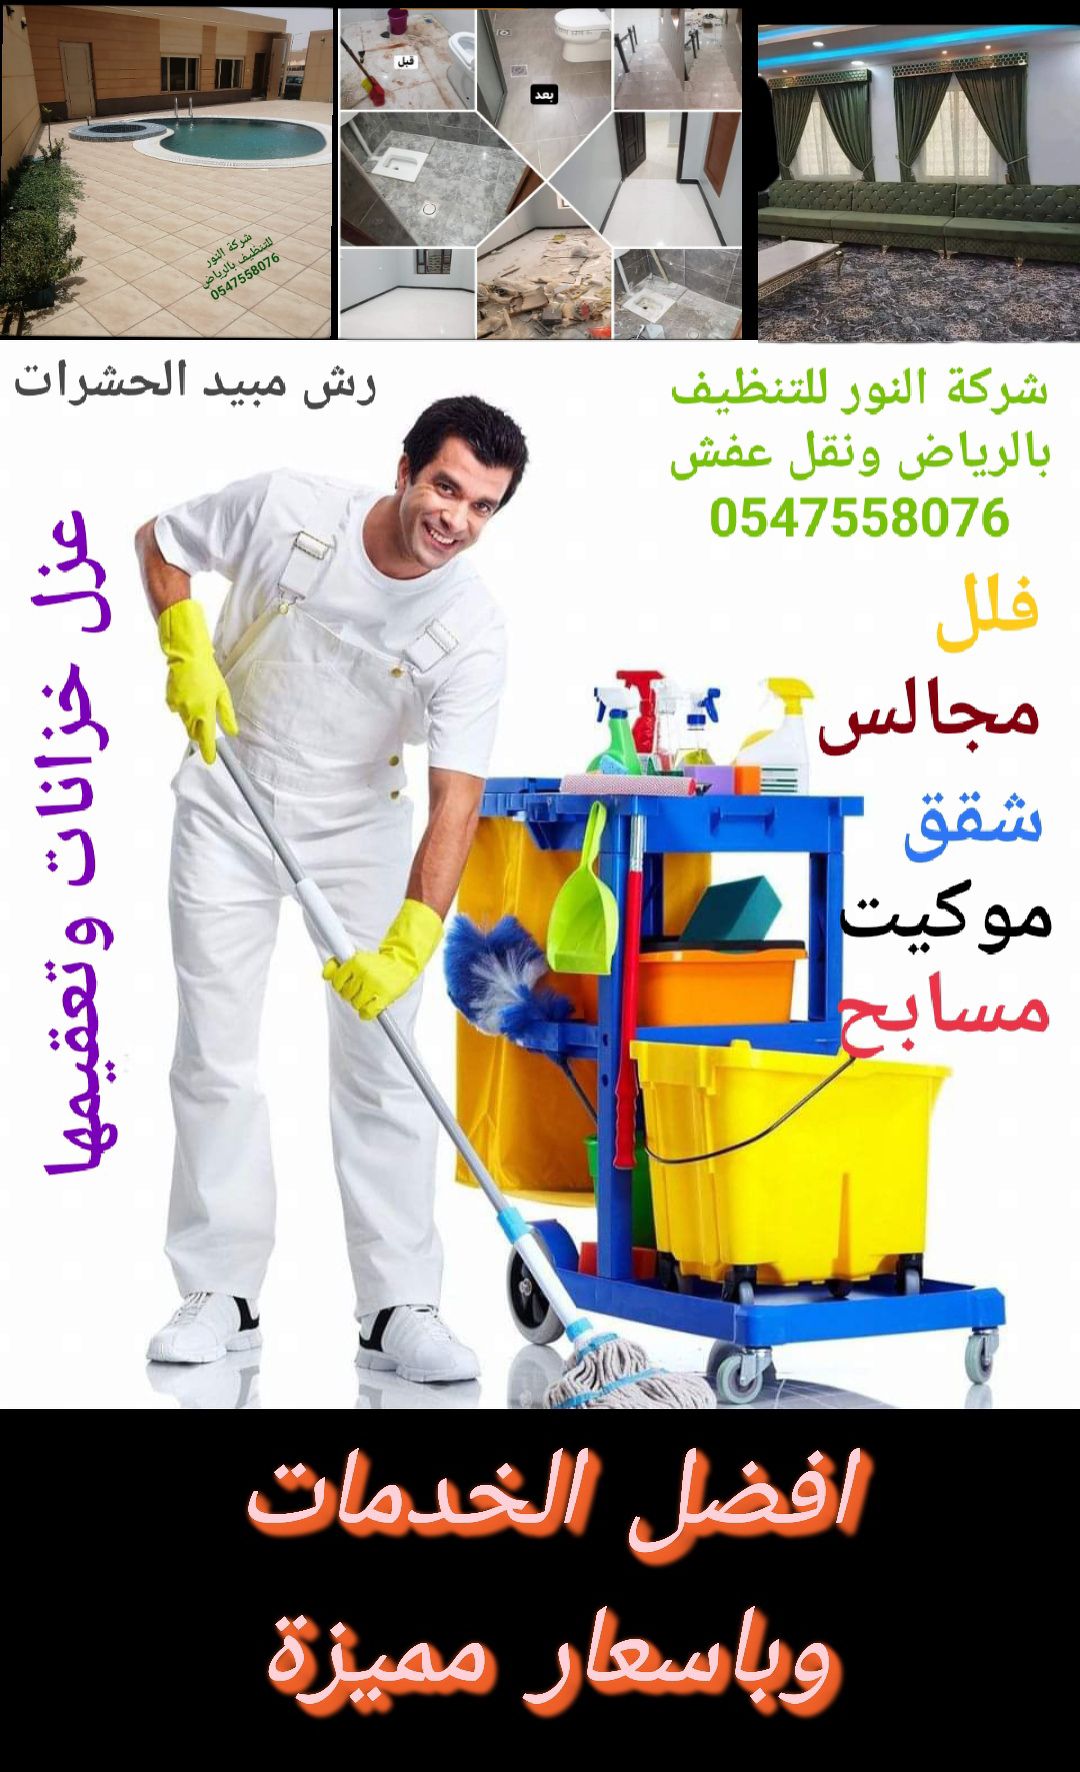 شركة تنظيف بالرياض ونقل عفش وعزل الخزانات وتعقيمها
0547558076